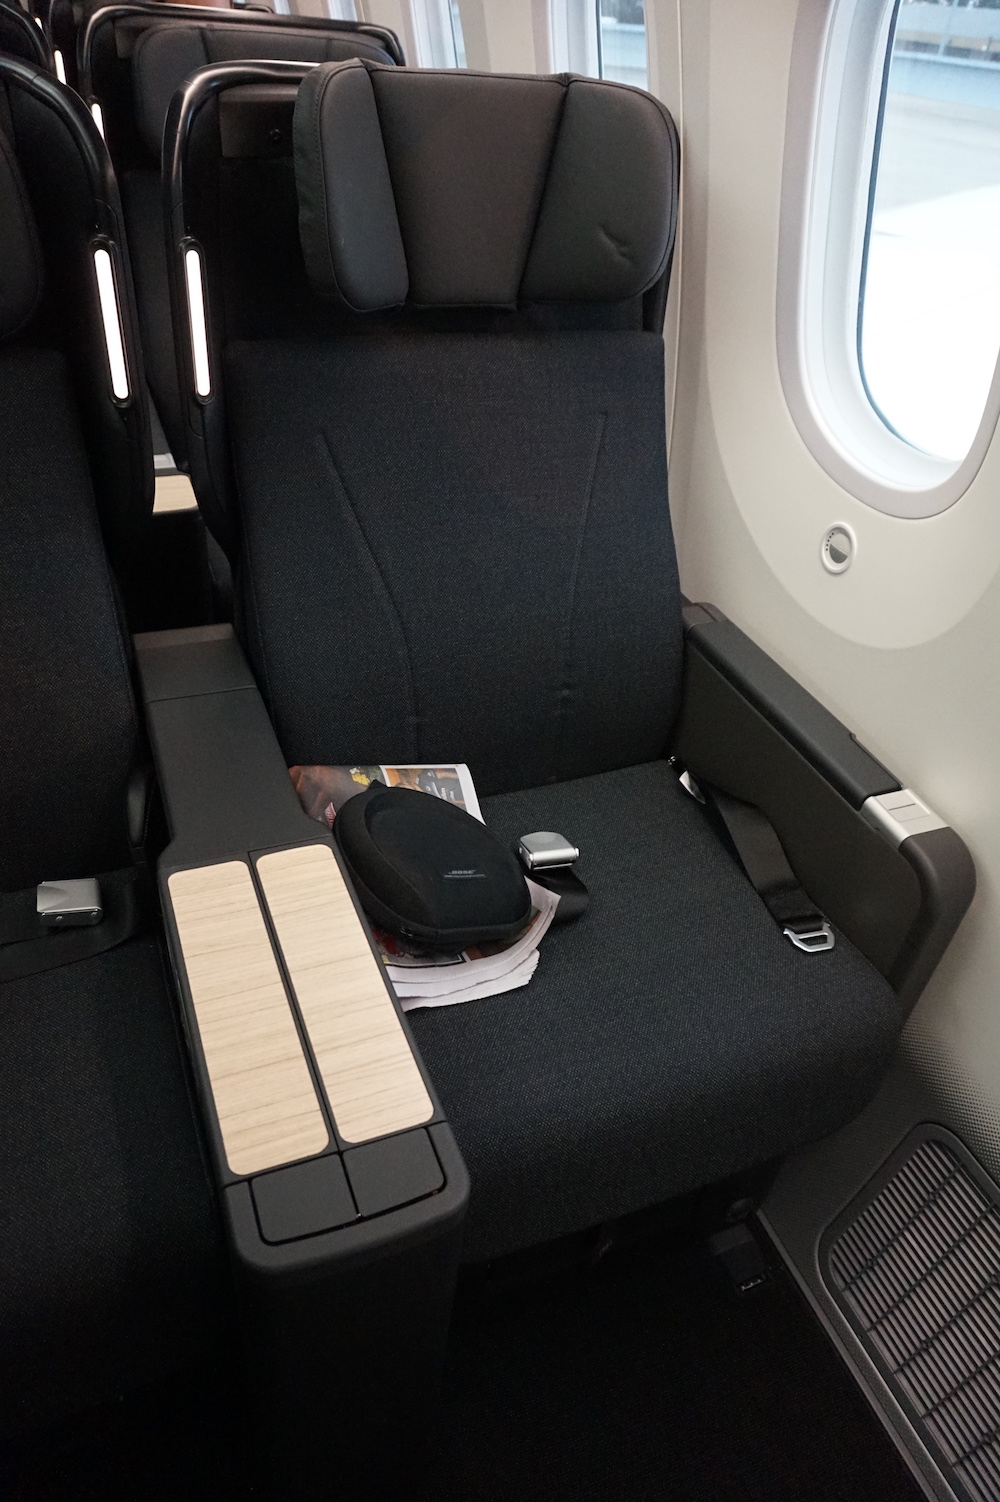 Qantas 787 Premium Economy Class